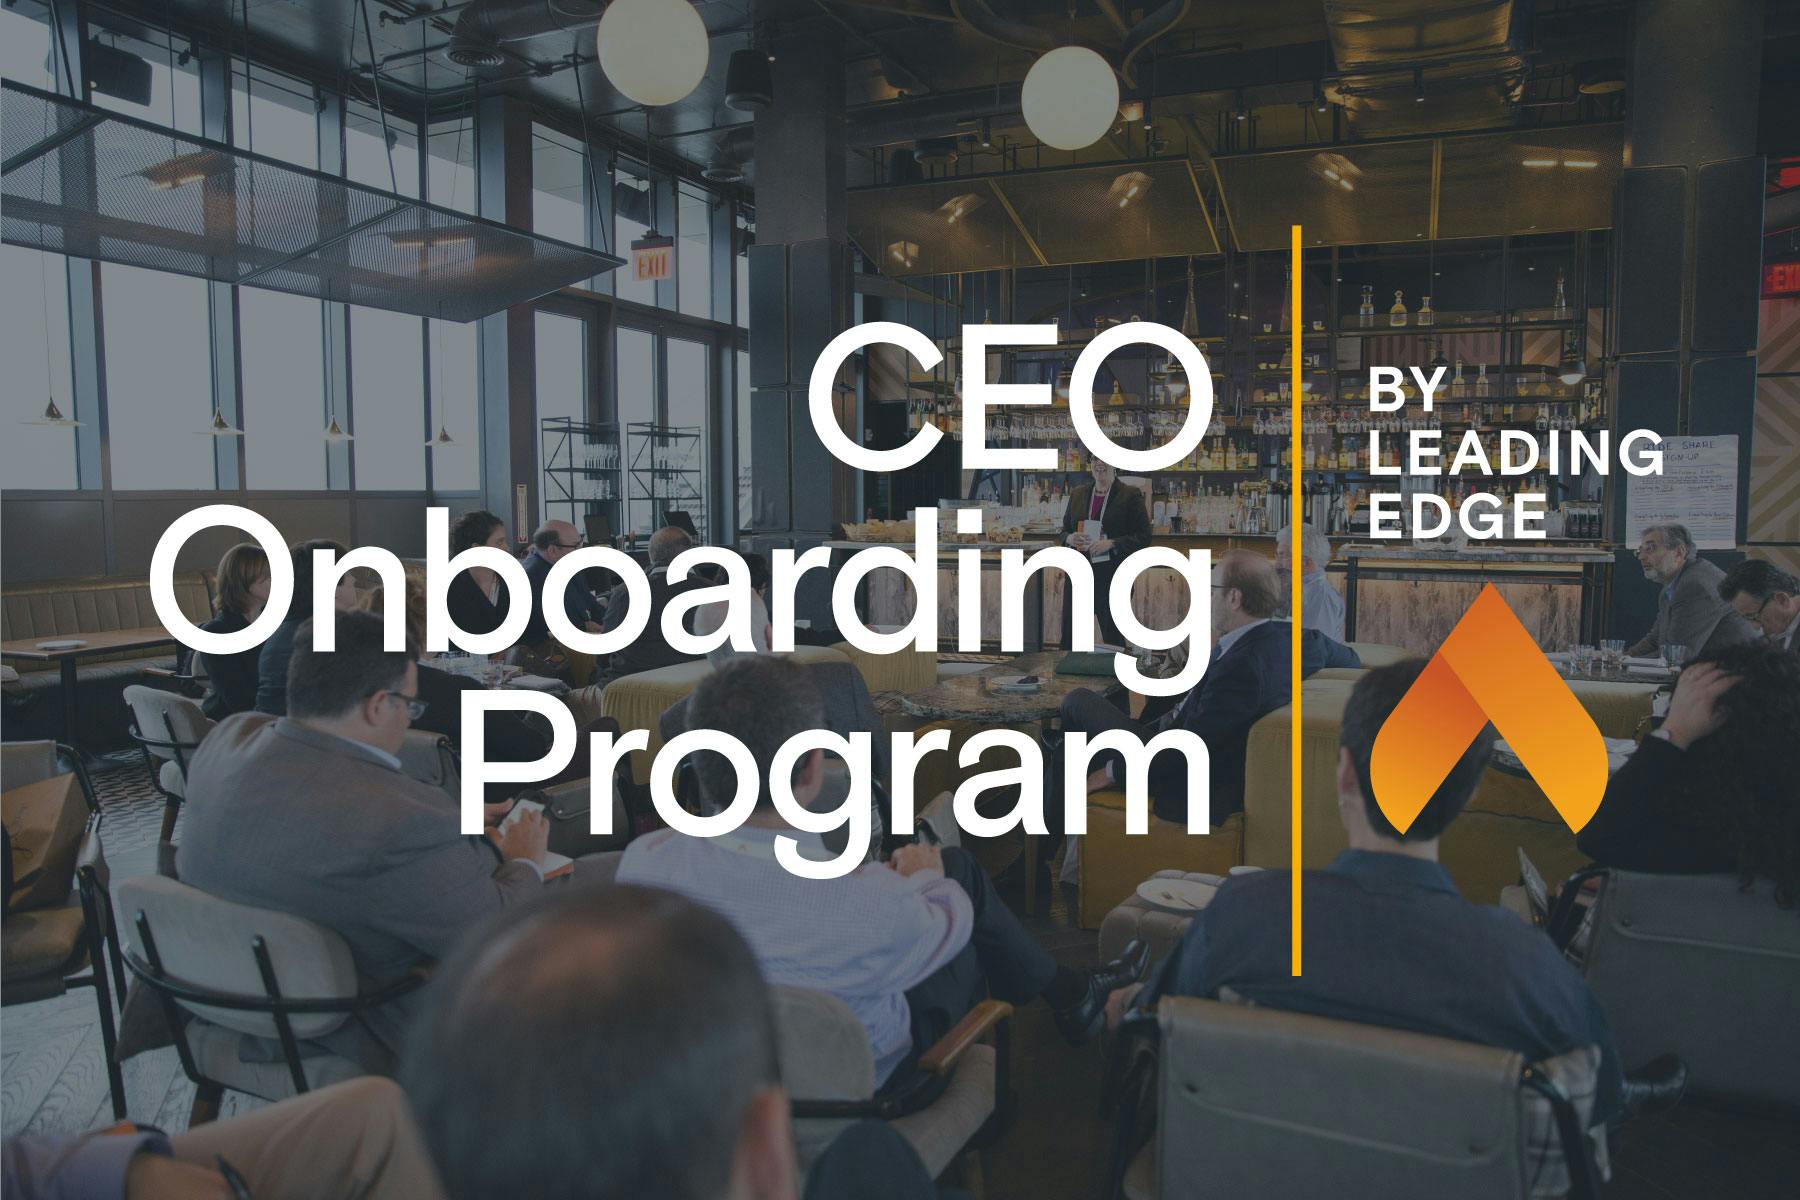 CEO Onboarding Program